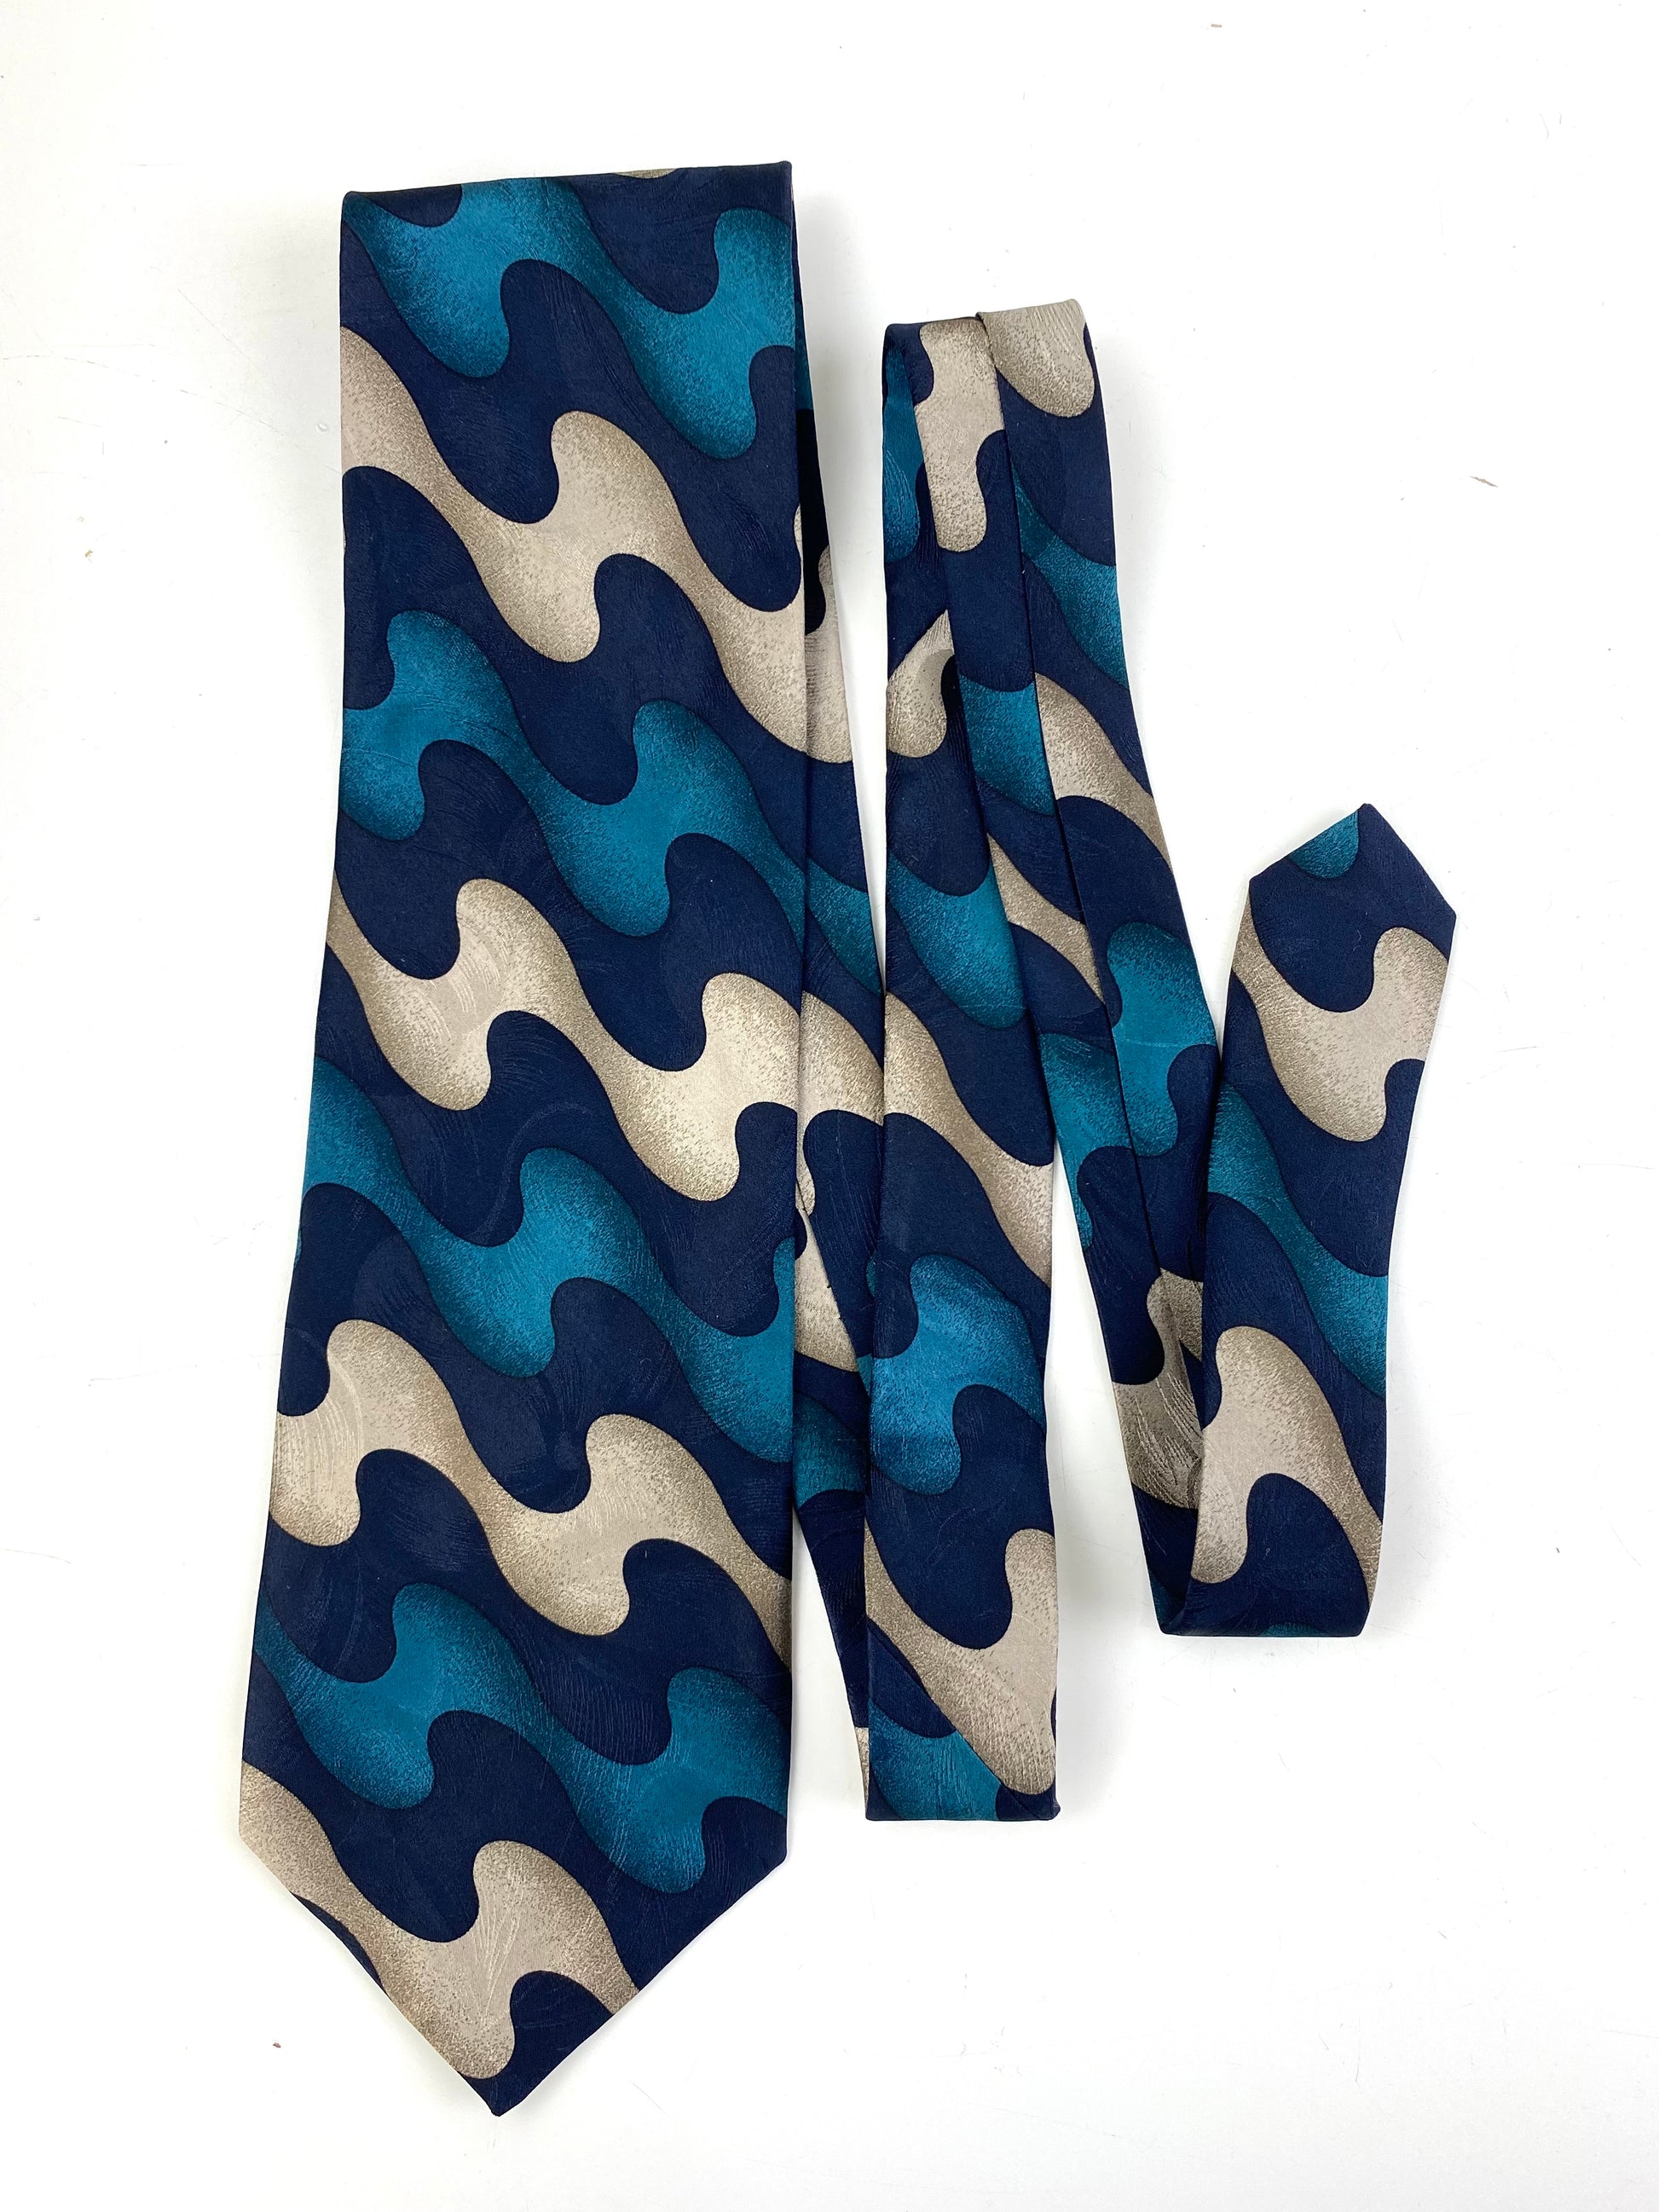 Front of: 90s Deadstock Silk Necktie, Men's Vintage Teal/ Navy/ Beige Abstract Pattern Tie, NOS